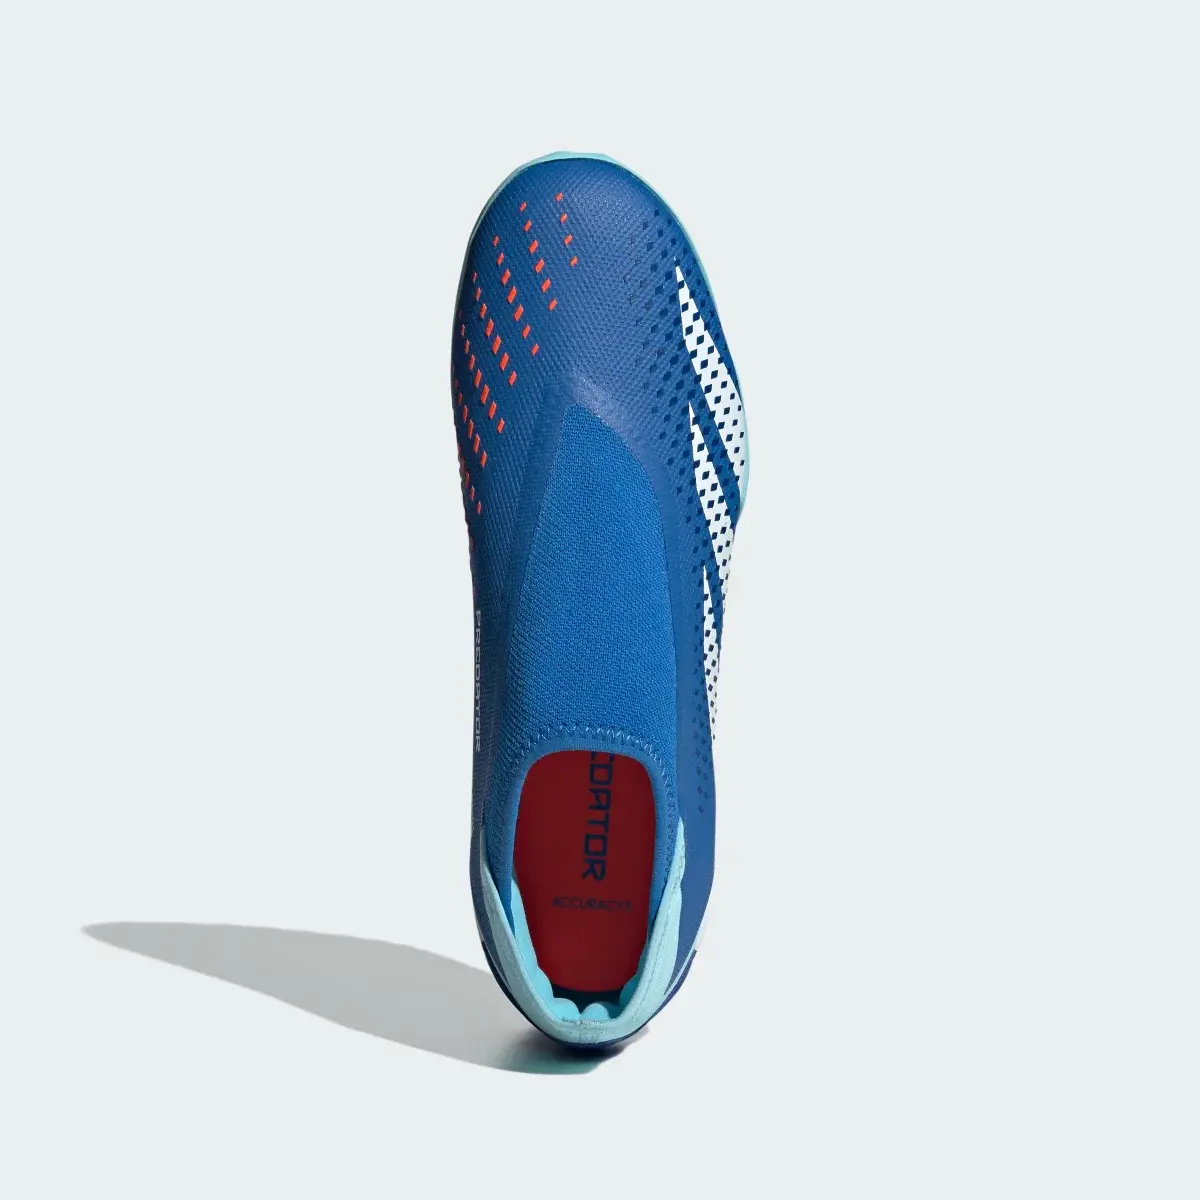 Adidas Calzado de Fútbol Predator Accuracy.3 Sin Cordones Pasto Sintético. 3